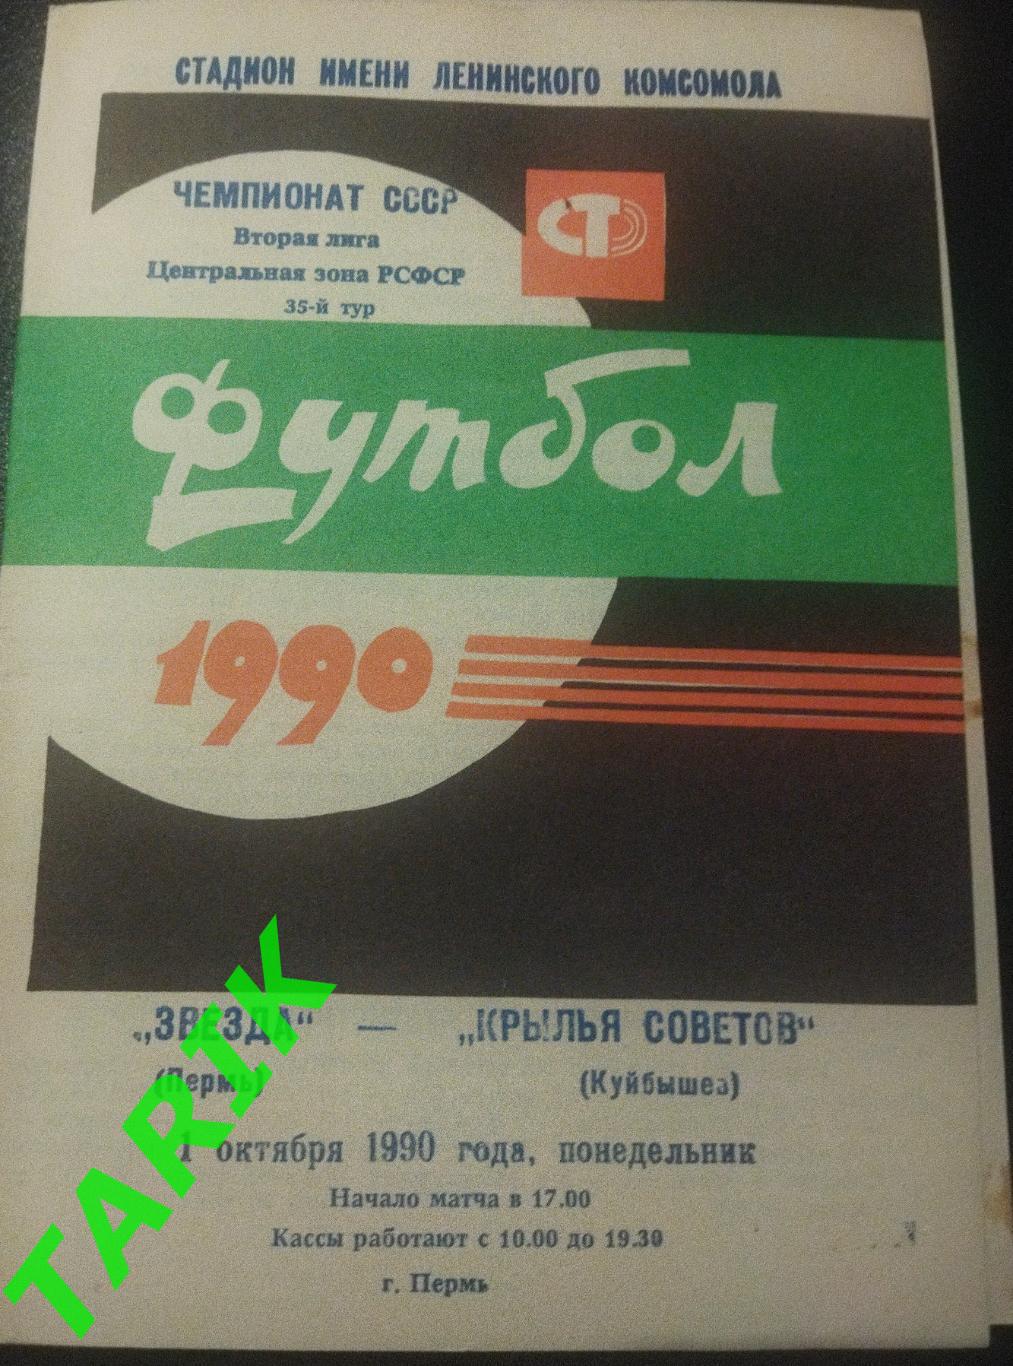 Звезда Пермь - Крылья советов Куйбышев 1990